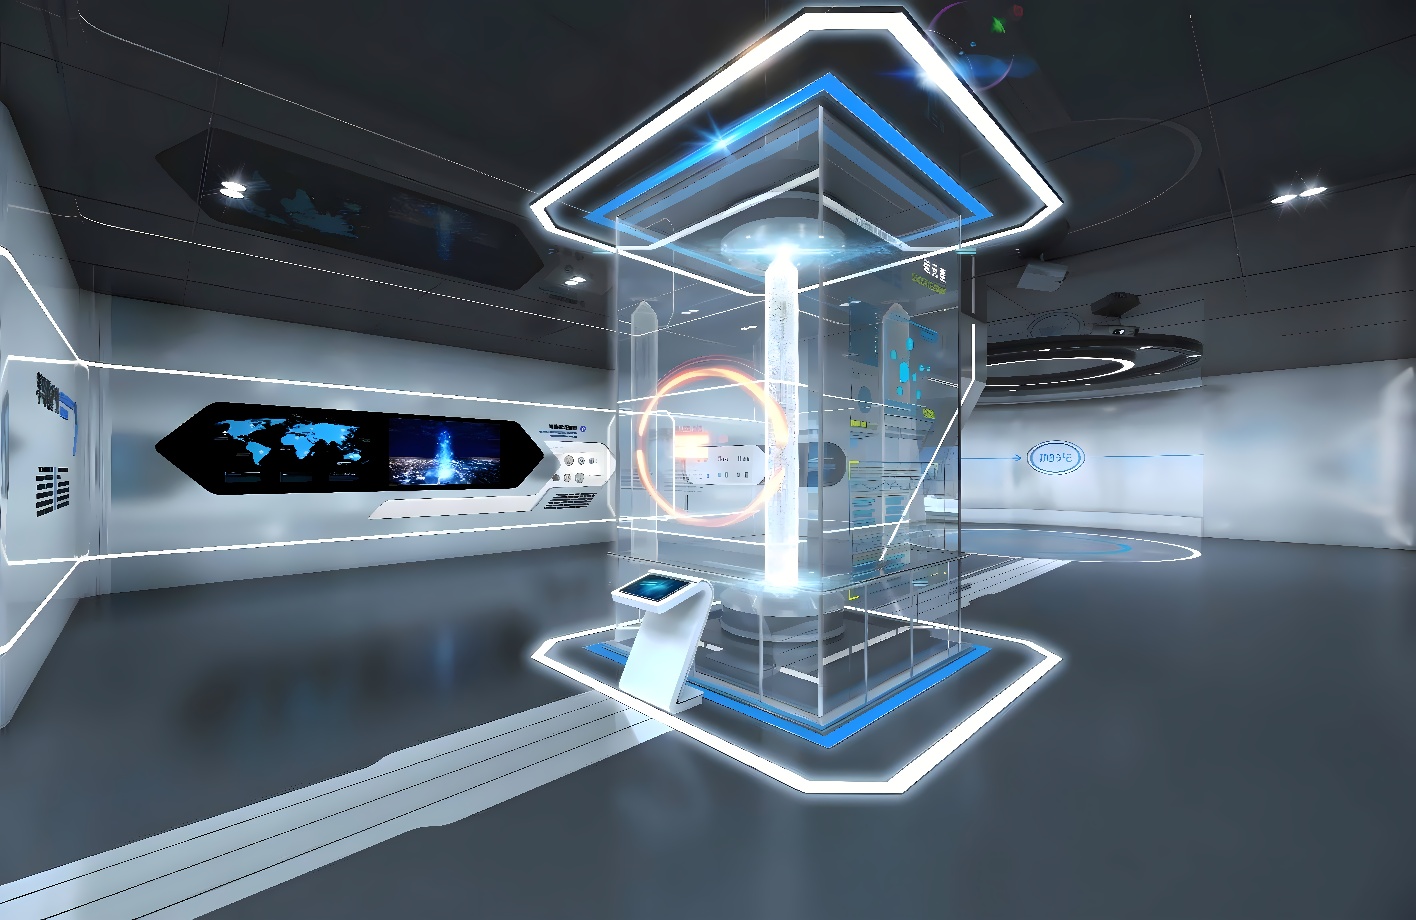 这是一张展示现代科技感的室内设计图，中心有未来风格的信息展示柱，周围配备高科技屏幕和清新简洁的装饰风格。